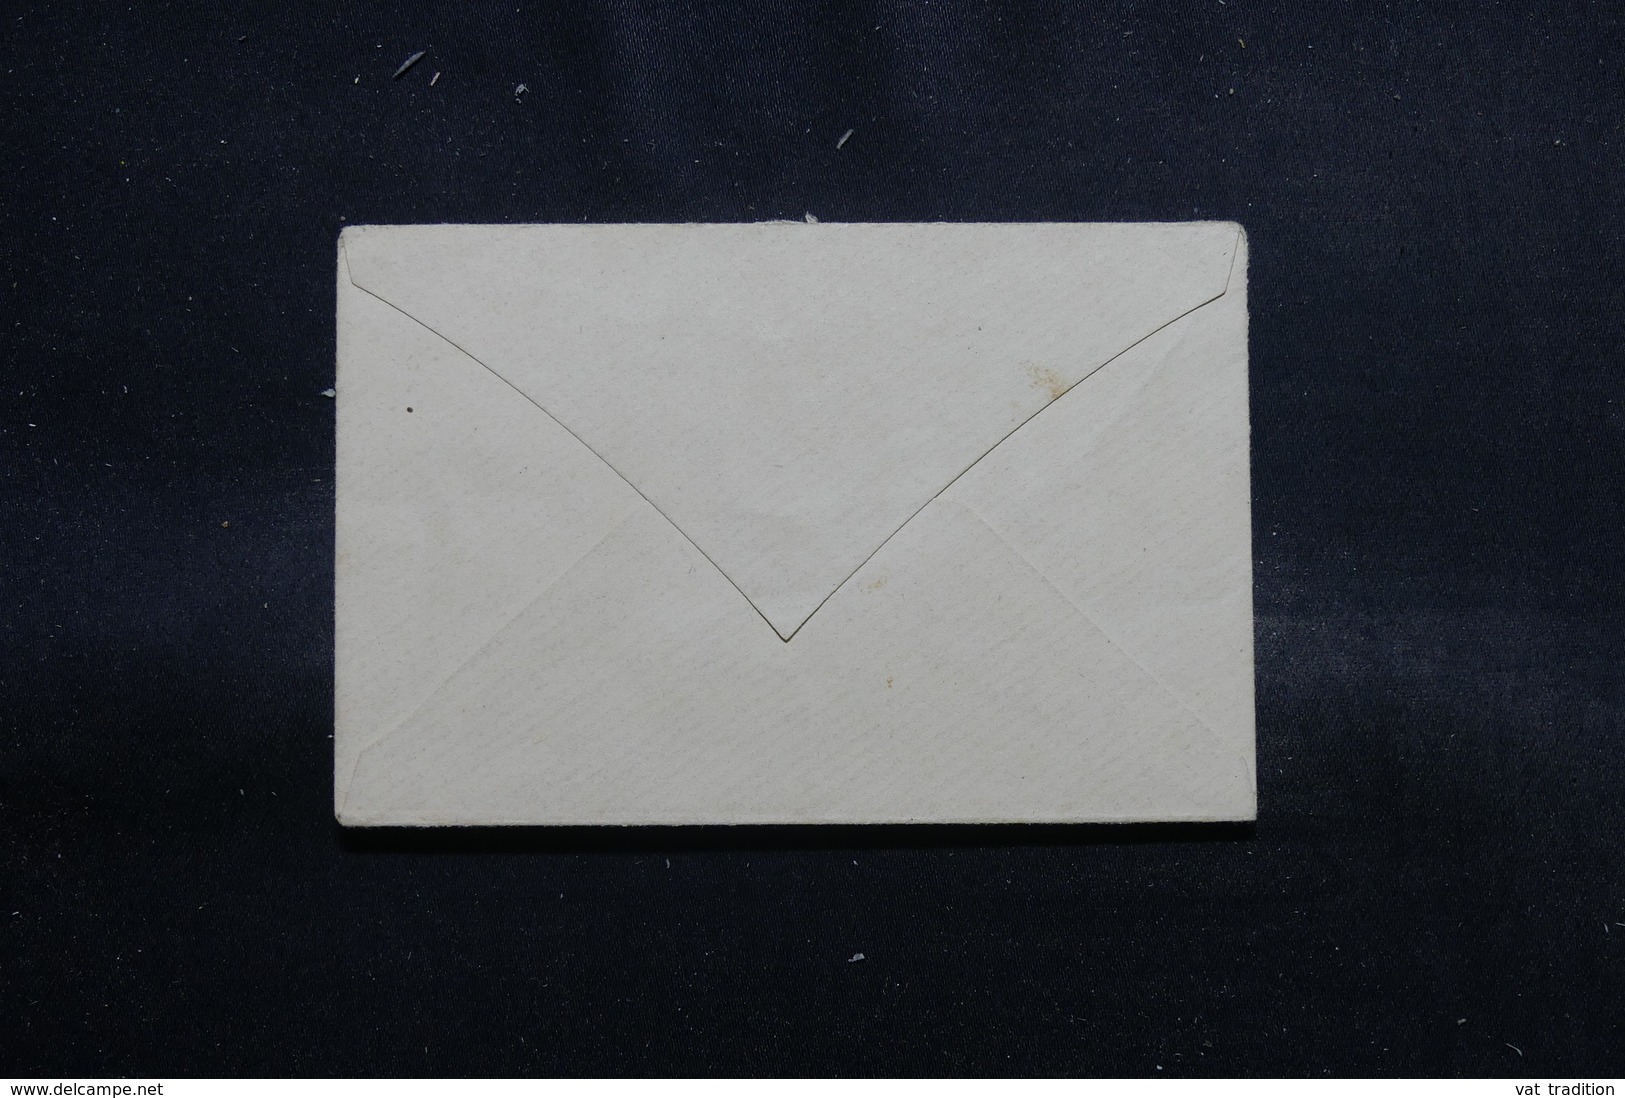 GABON - Entier Postal Type Groupe Non Circulé - L 55259 - Covers & Documents